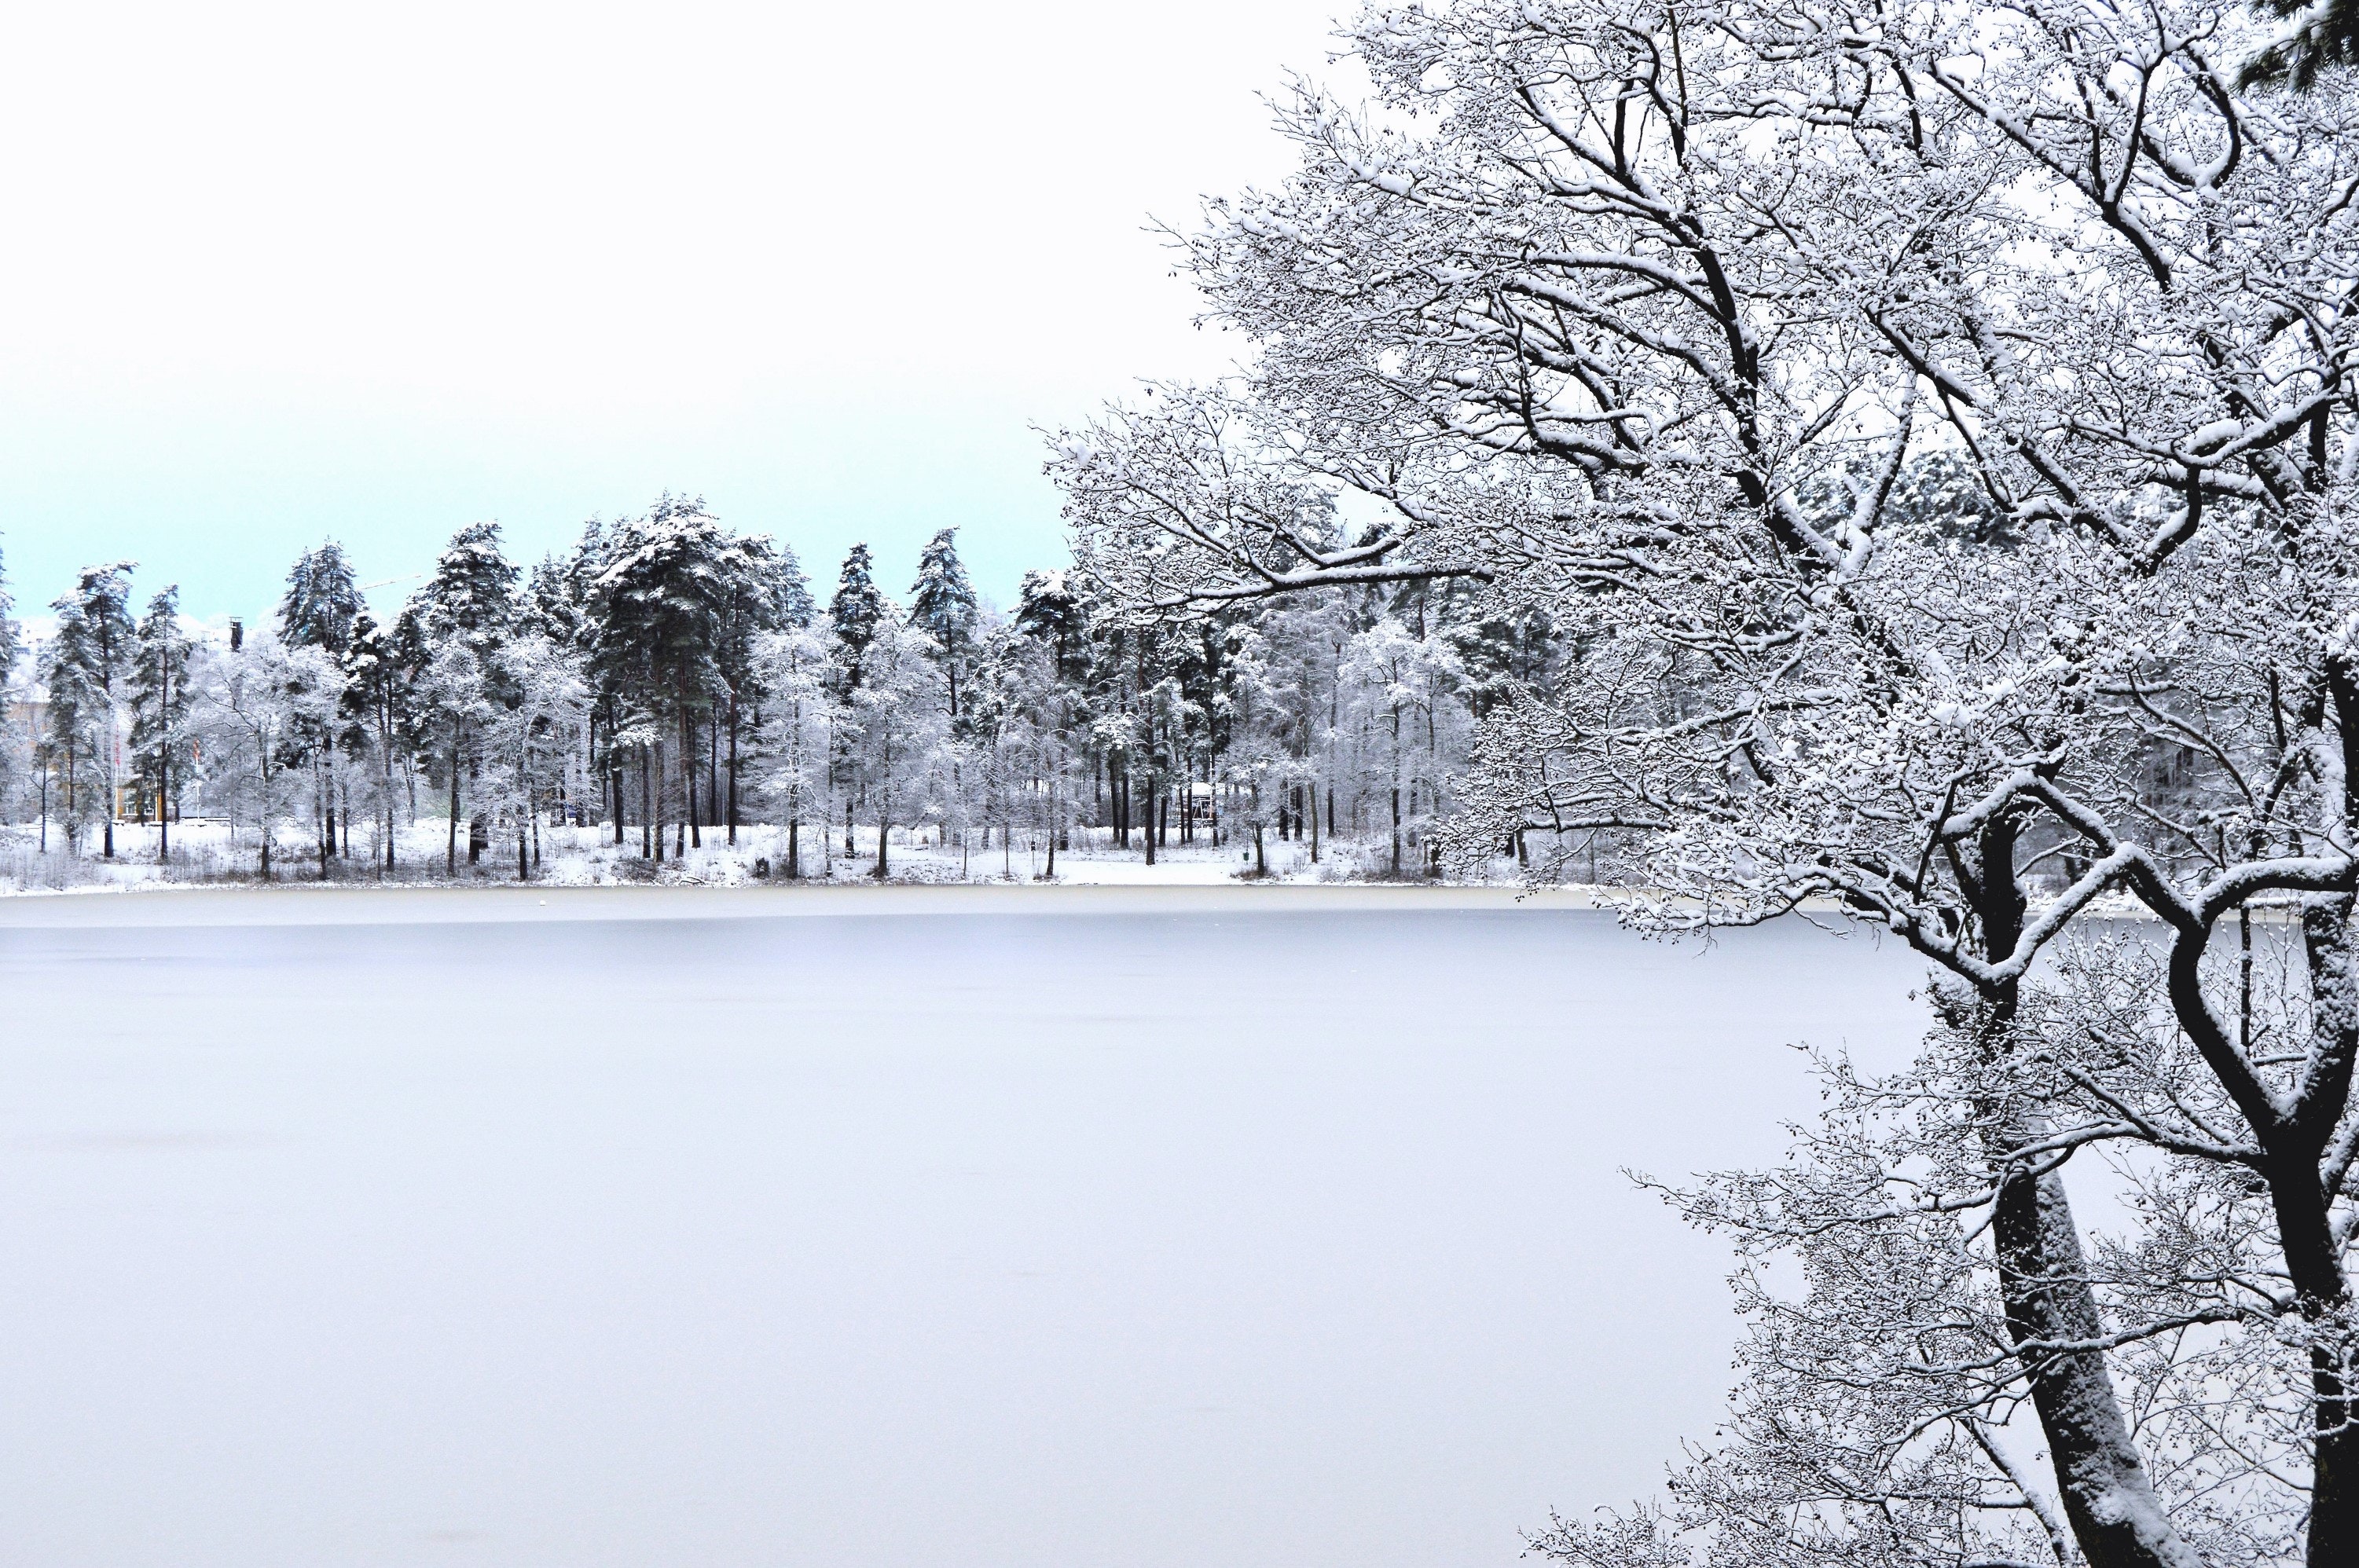 1000+ Amazing Winter Scene Photos · Pexels · Free Stock Photos